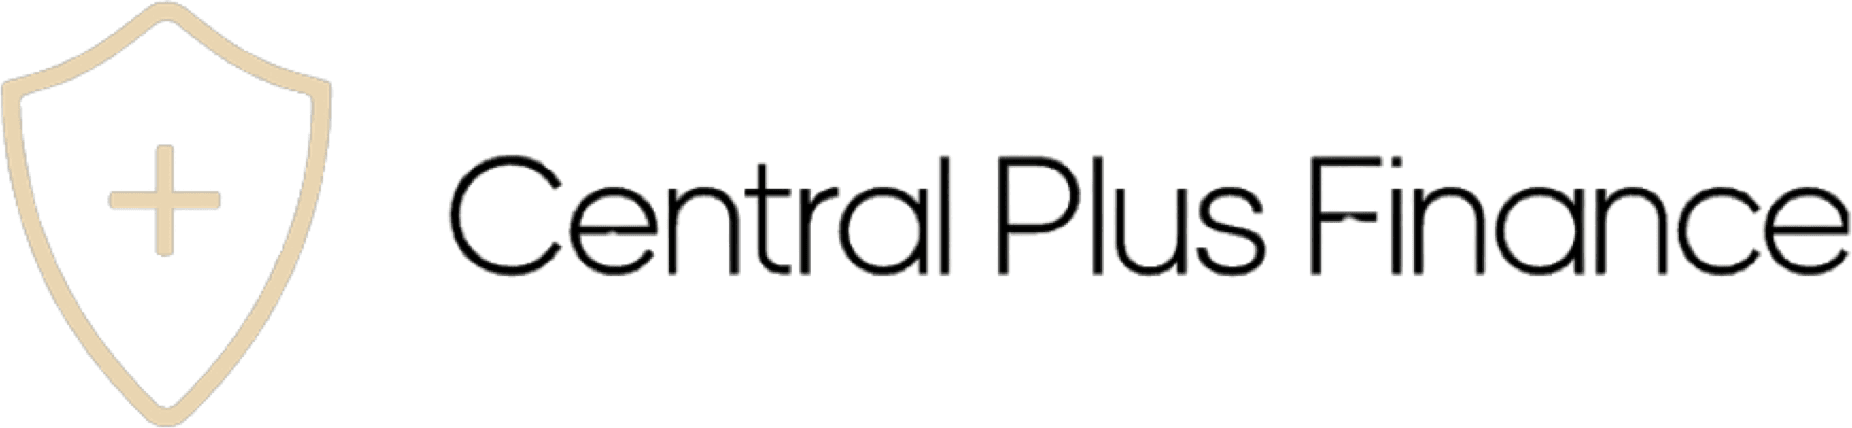 Central Plus Finance